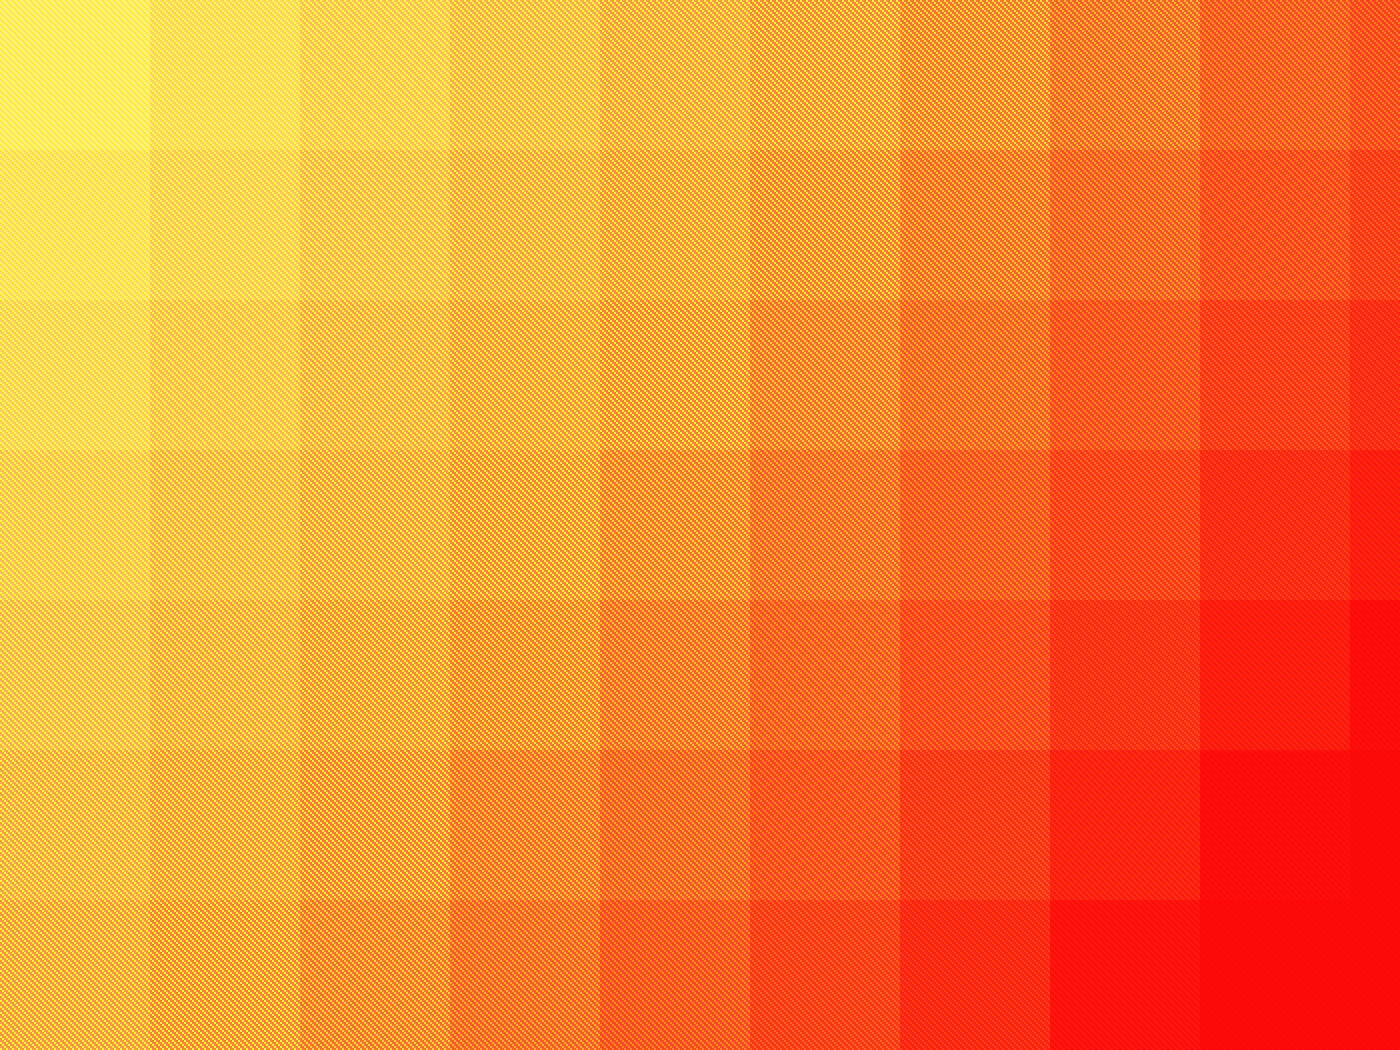 Red and Orange Square Logo - pattern orange squares / 1400x1050 Wallpaper. Yellow: + Red